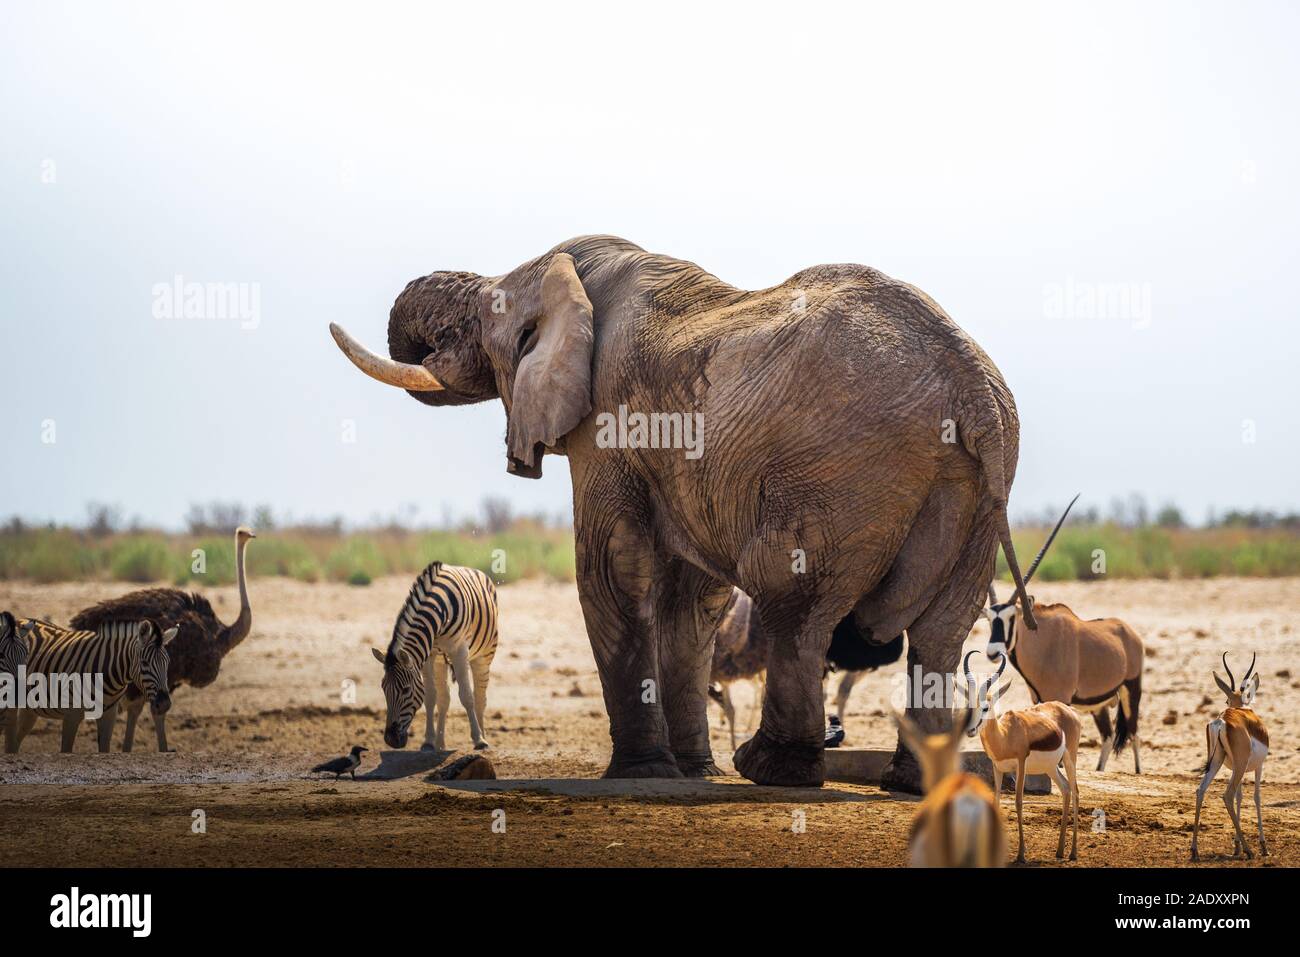 Afrikanischer Elefant Getränke Wasser an einem Wasserloch im Etosha National Park, Namibia, von anderen Tieren umgeben. Etoscha ist bekannt für seine Wasserstellen overfil Stockfoto